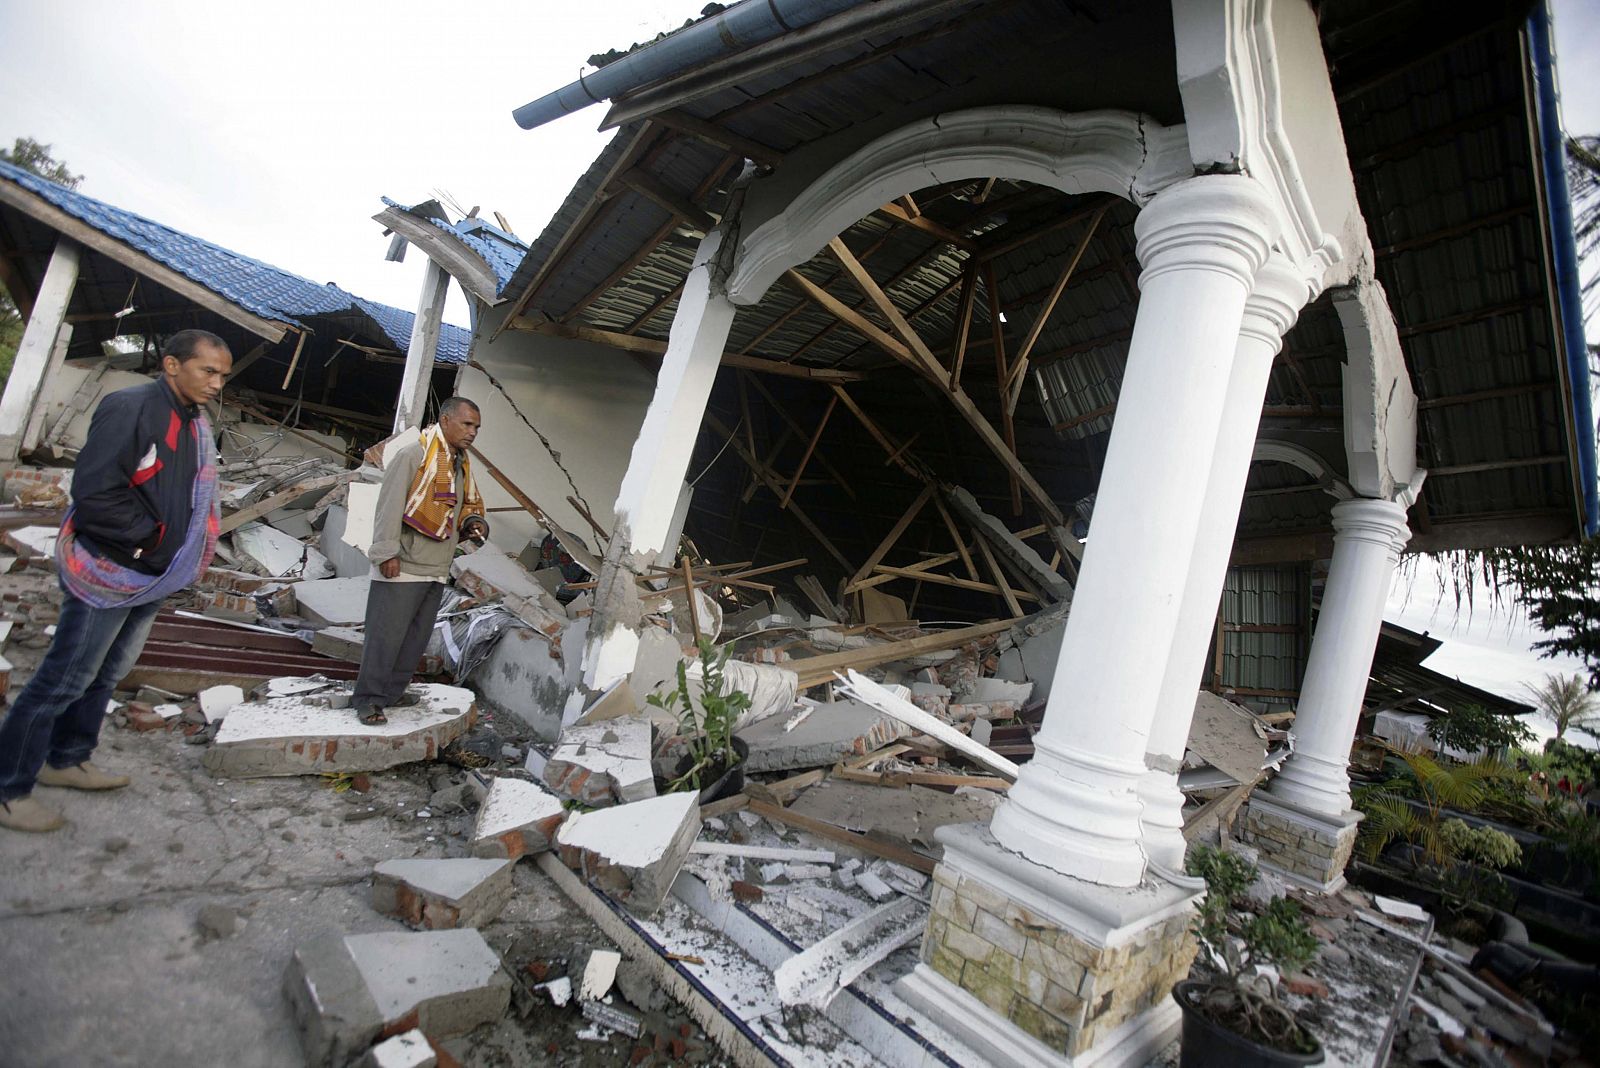 Habitantes examinan una edificación colapsada hoy, miércoles 3 de julio de 2013, en Blang Pancung (Indonesia). Al menos 22 personas murieron y centenares han resultado heridas a causa del terremoto de 6,1 grados de magnitud que sacudió en la jornada